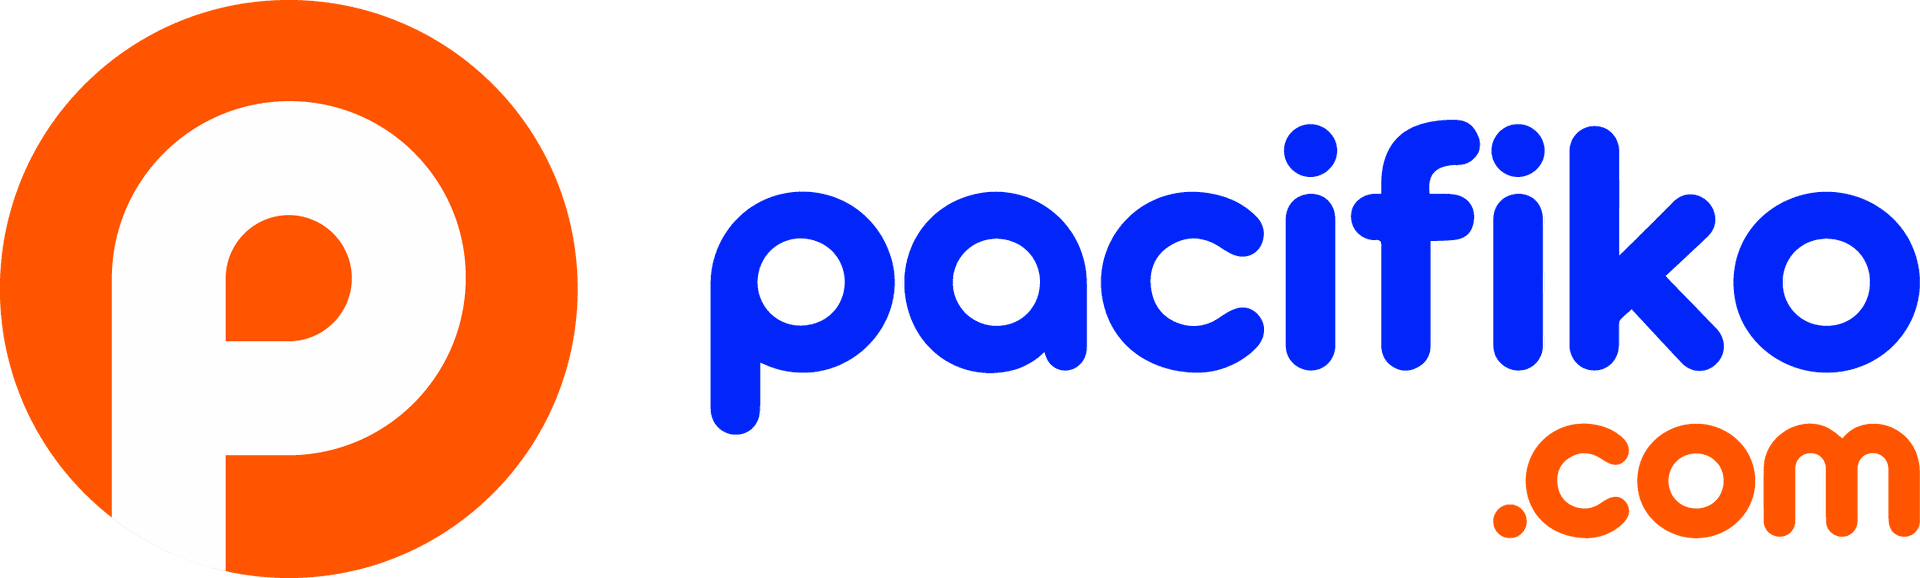 Pacifiko.com